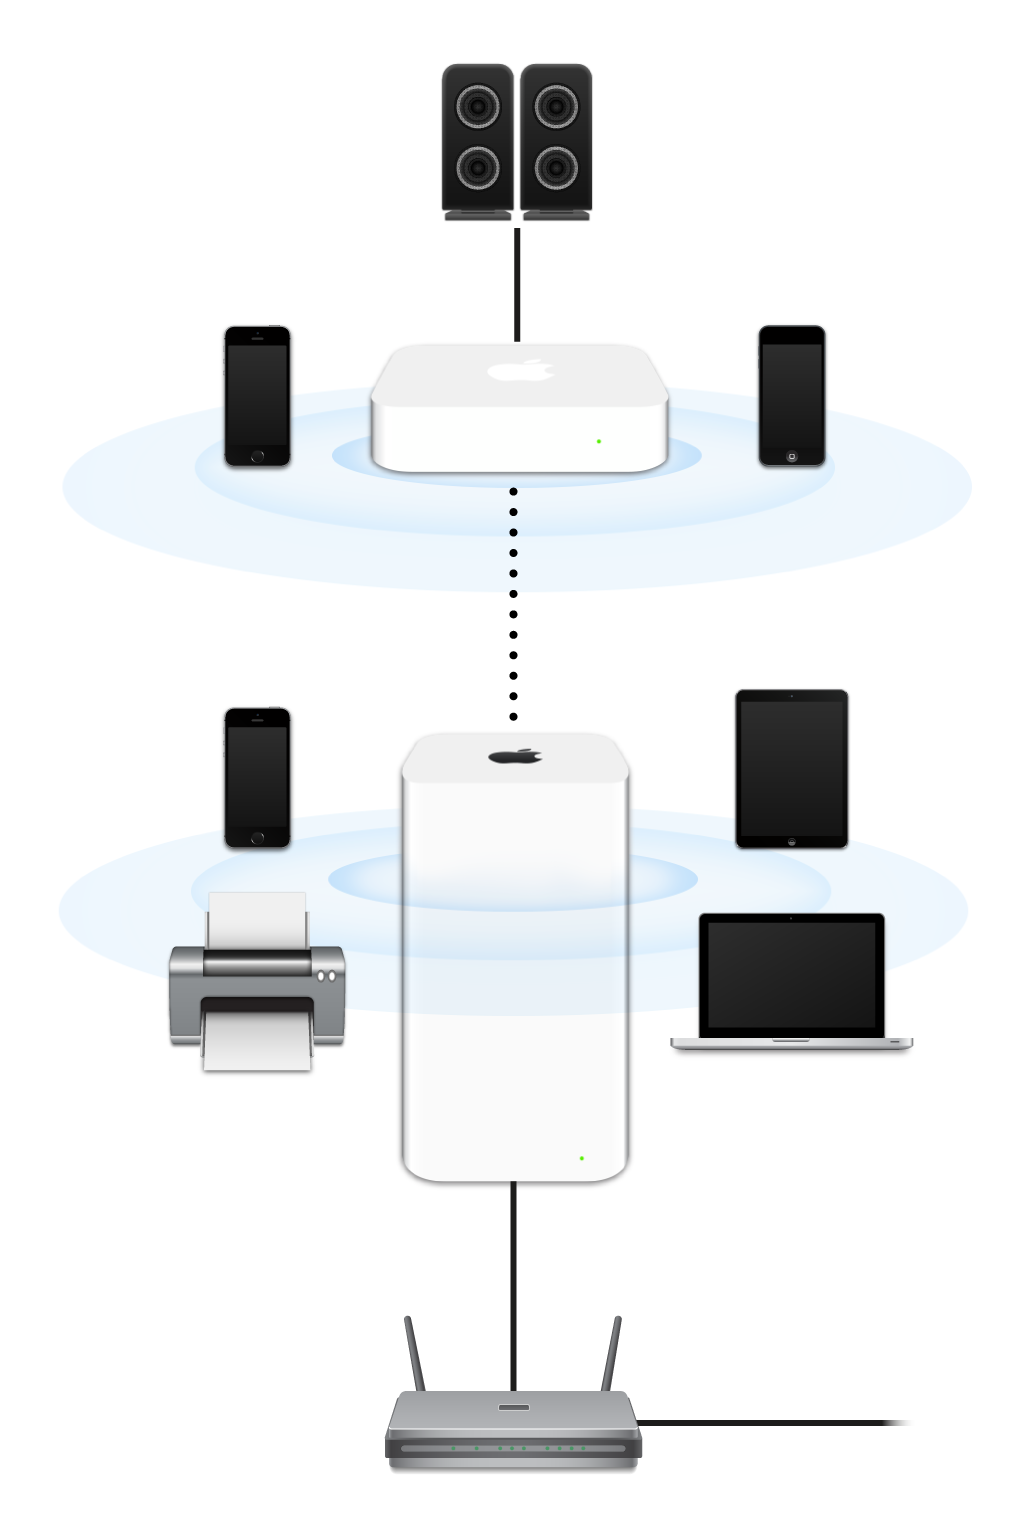 Una rete estesa, con AirPort Extreme e AirPort Express collegati a un modem e in comunicazione con vari dispositivi.